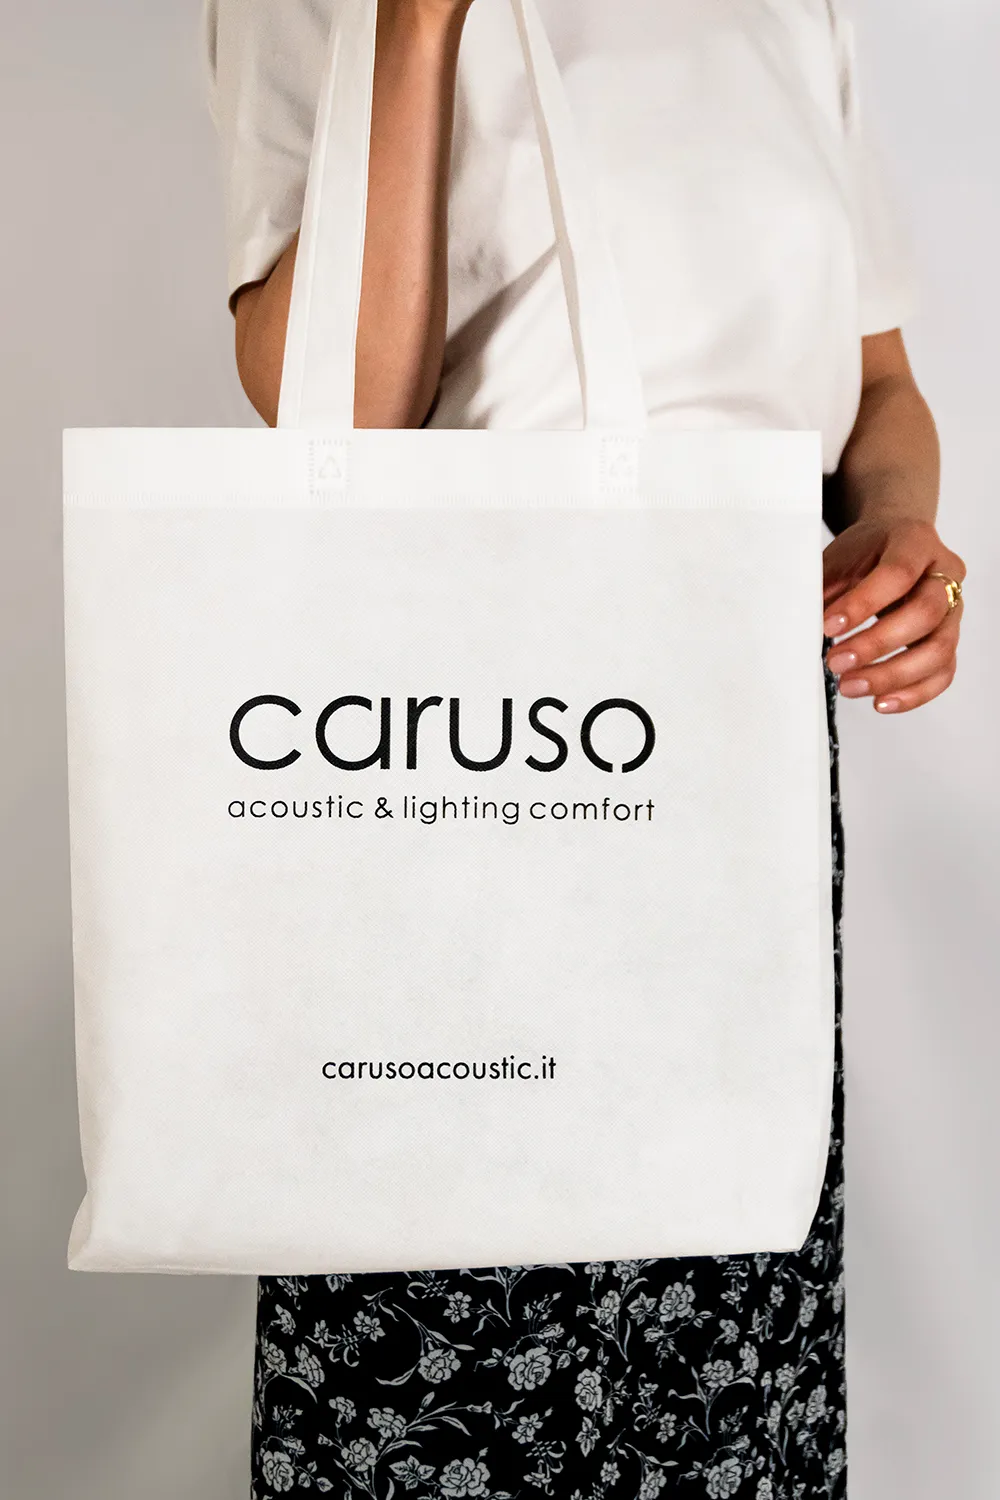 Immagine coordinata: Logo, biglietti da visita e bags Caruso Acoustic